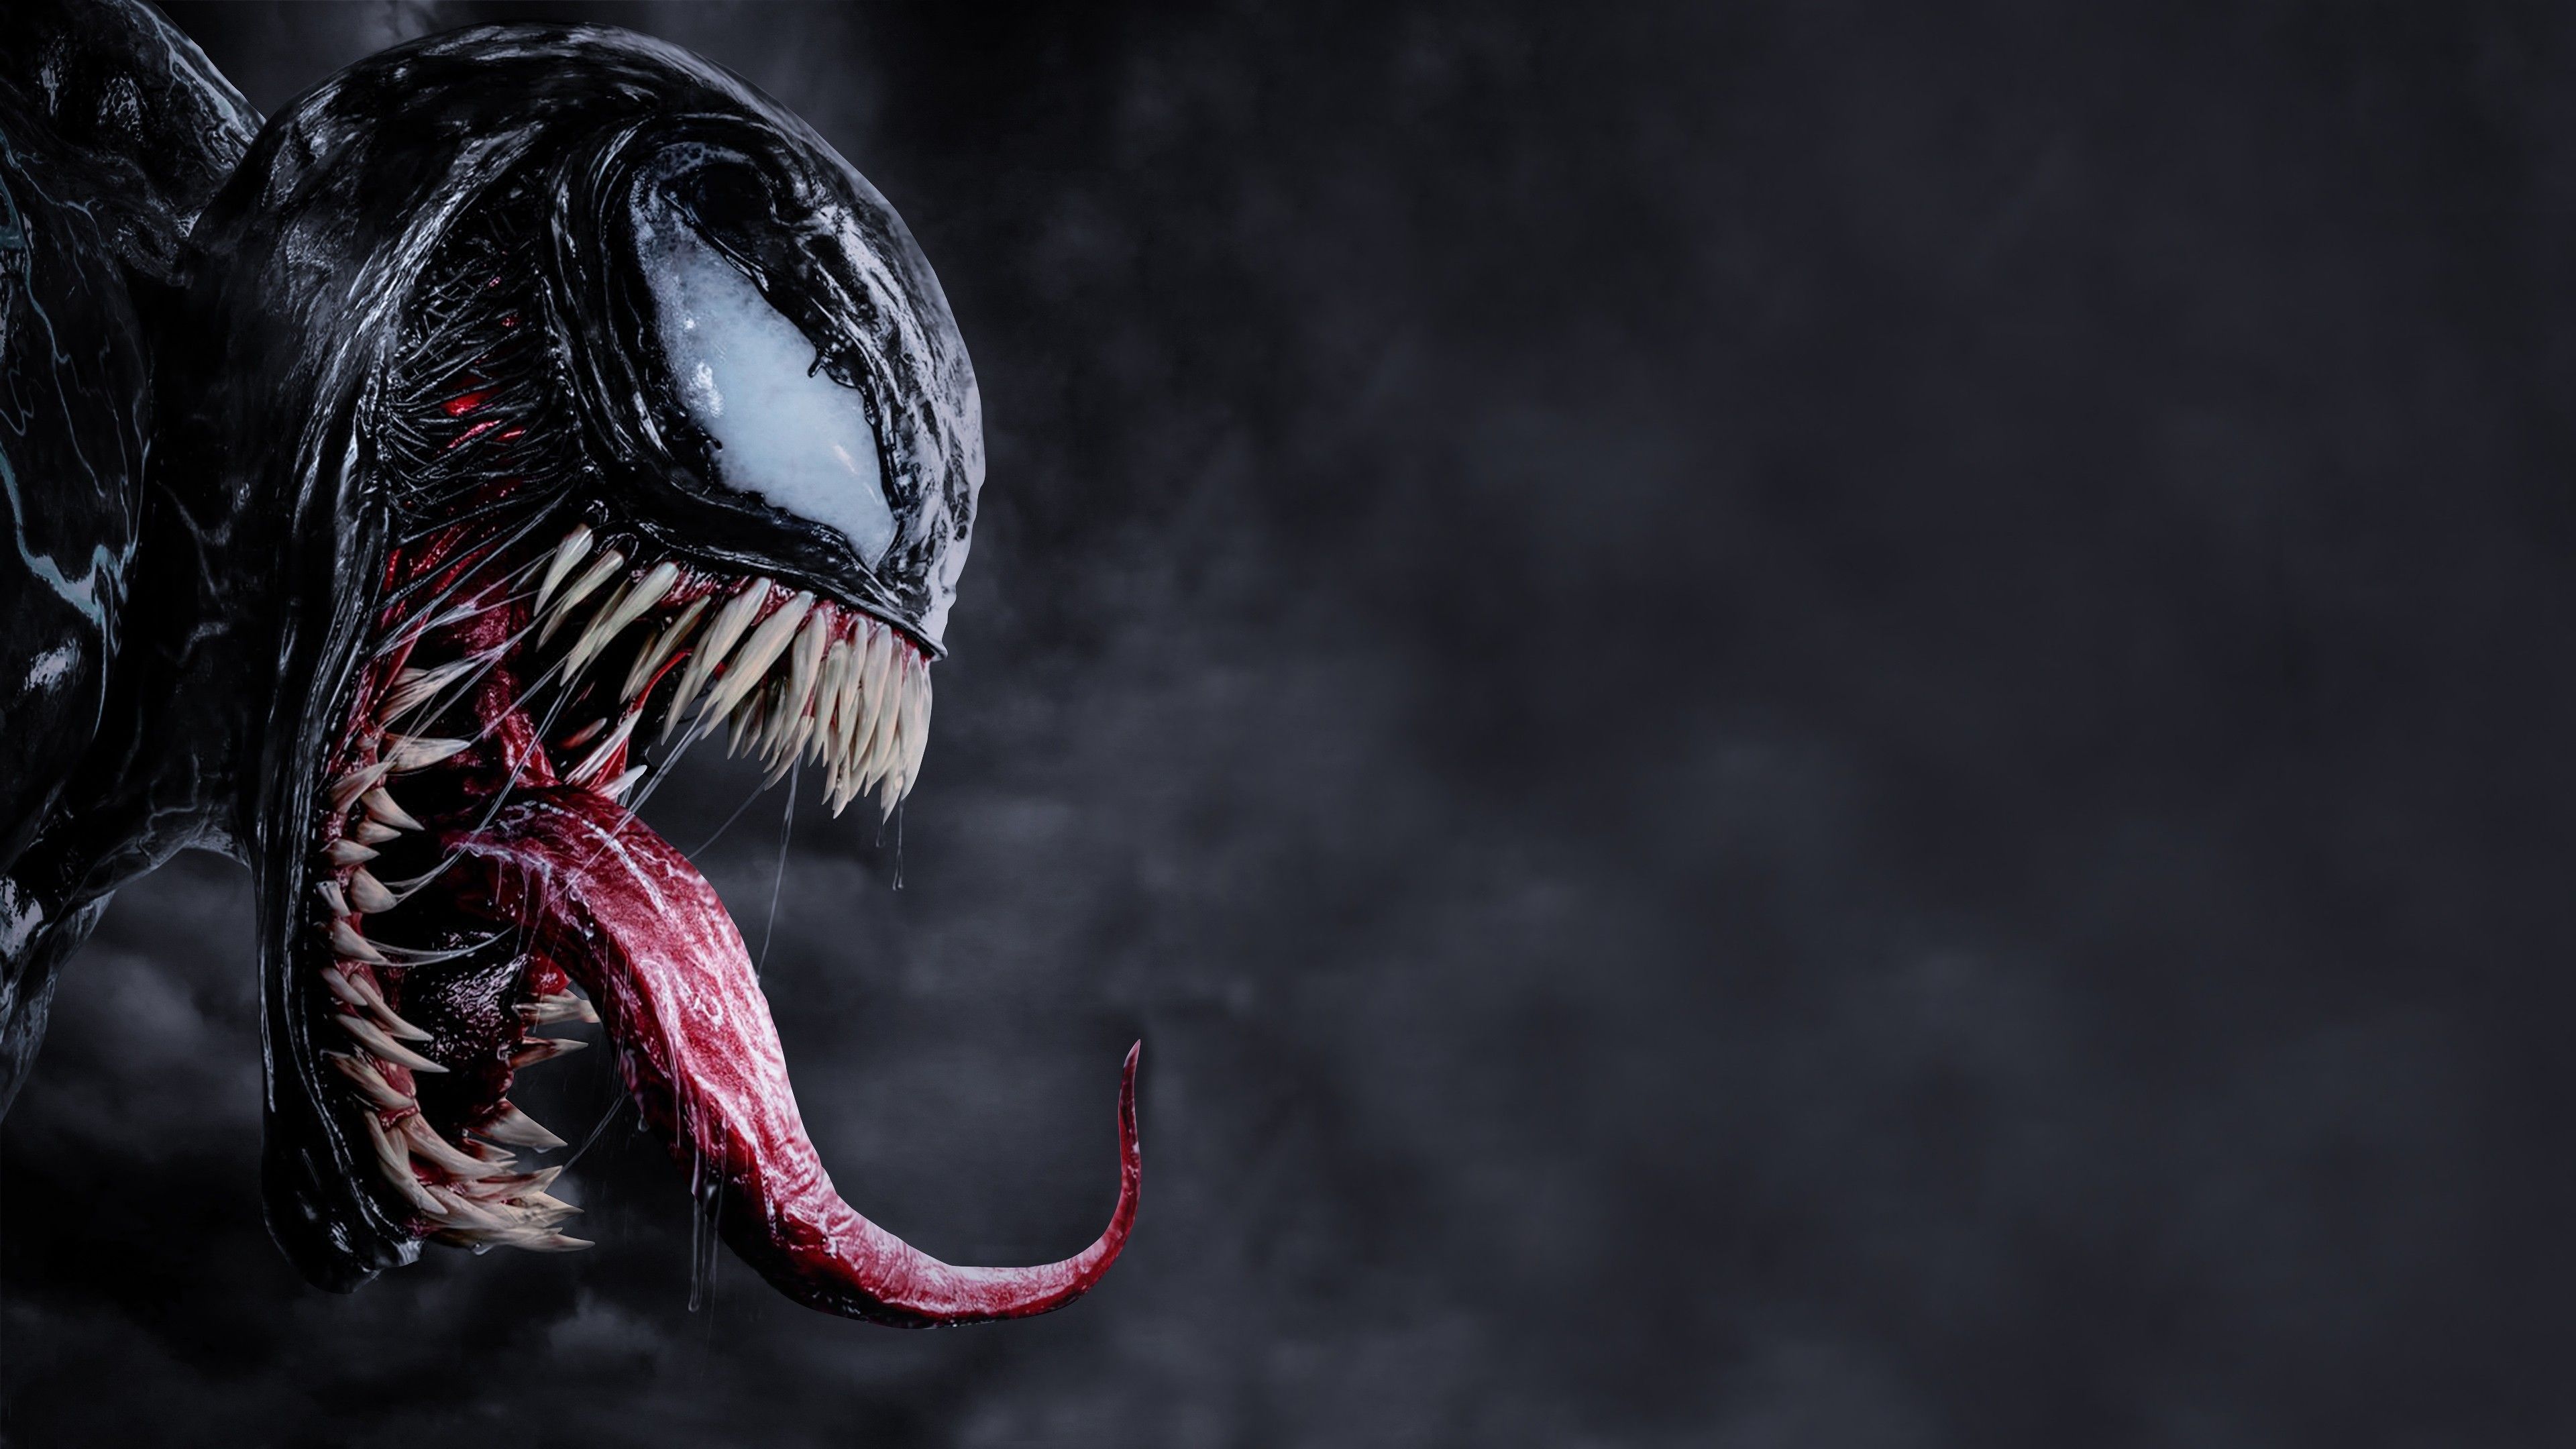 Venom Tom Hardy 4K. Venom movie .com